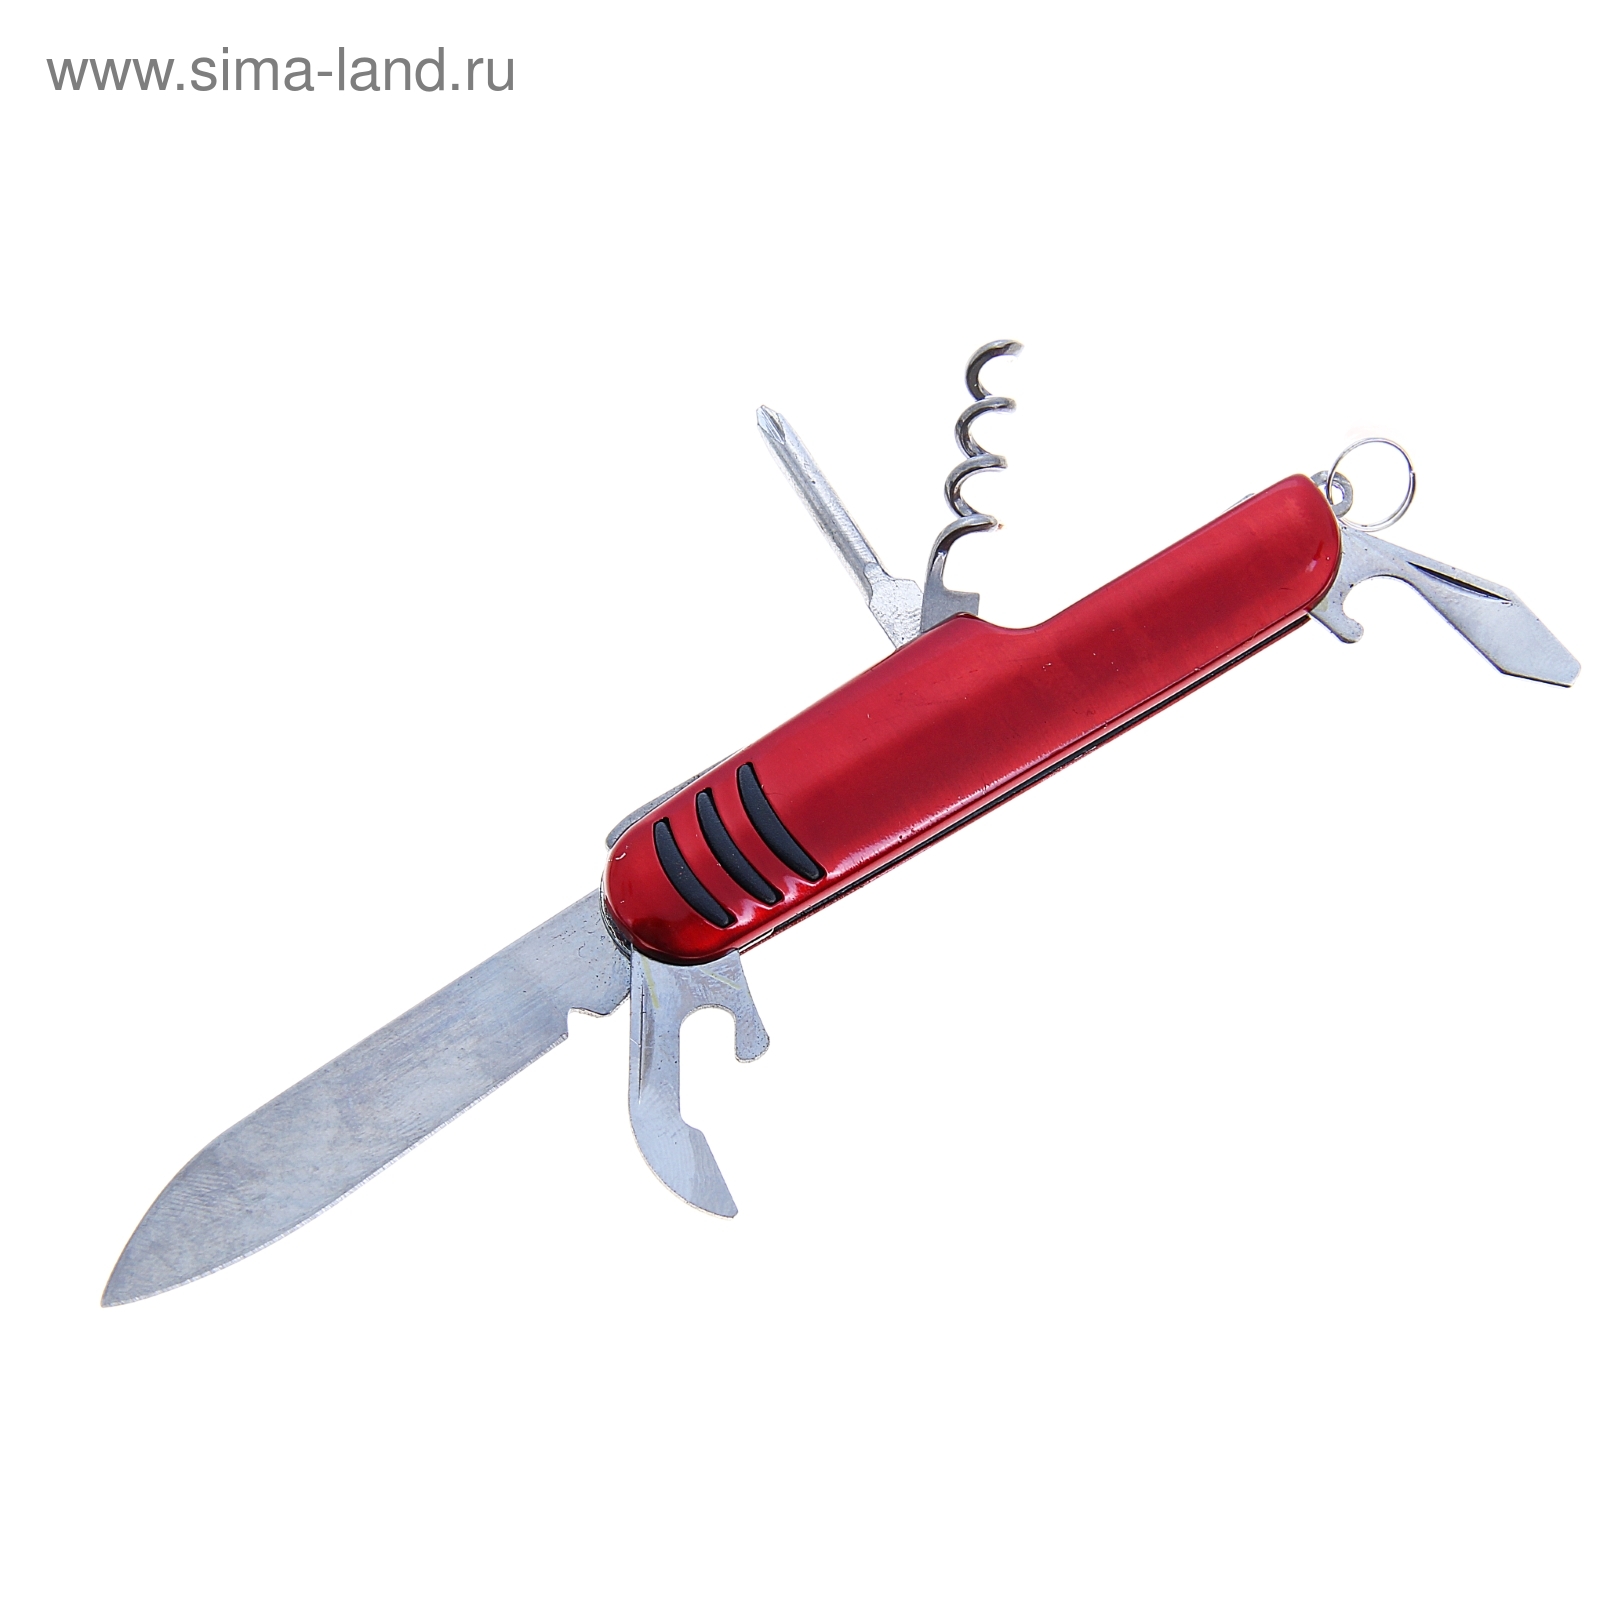 Нож многофункциональный 5 в 1, рукоять с насечками, красная